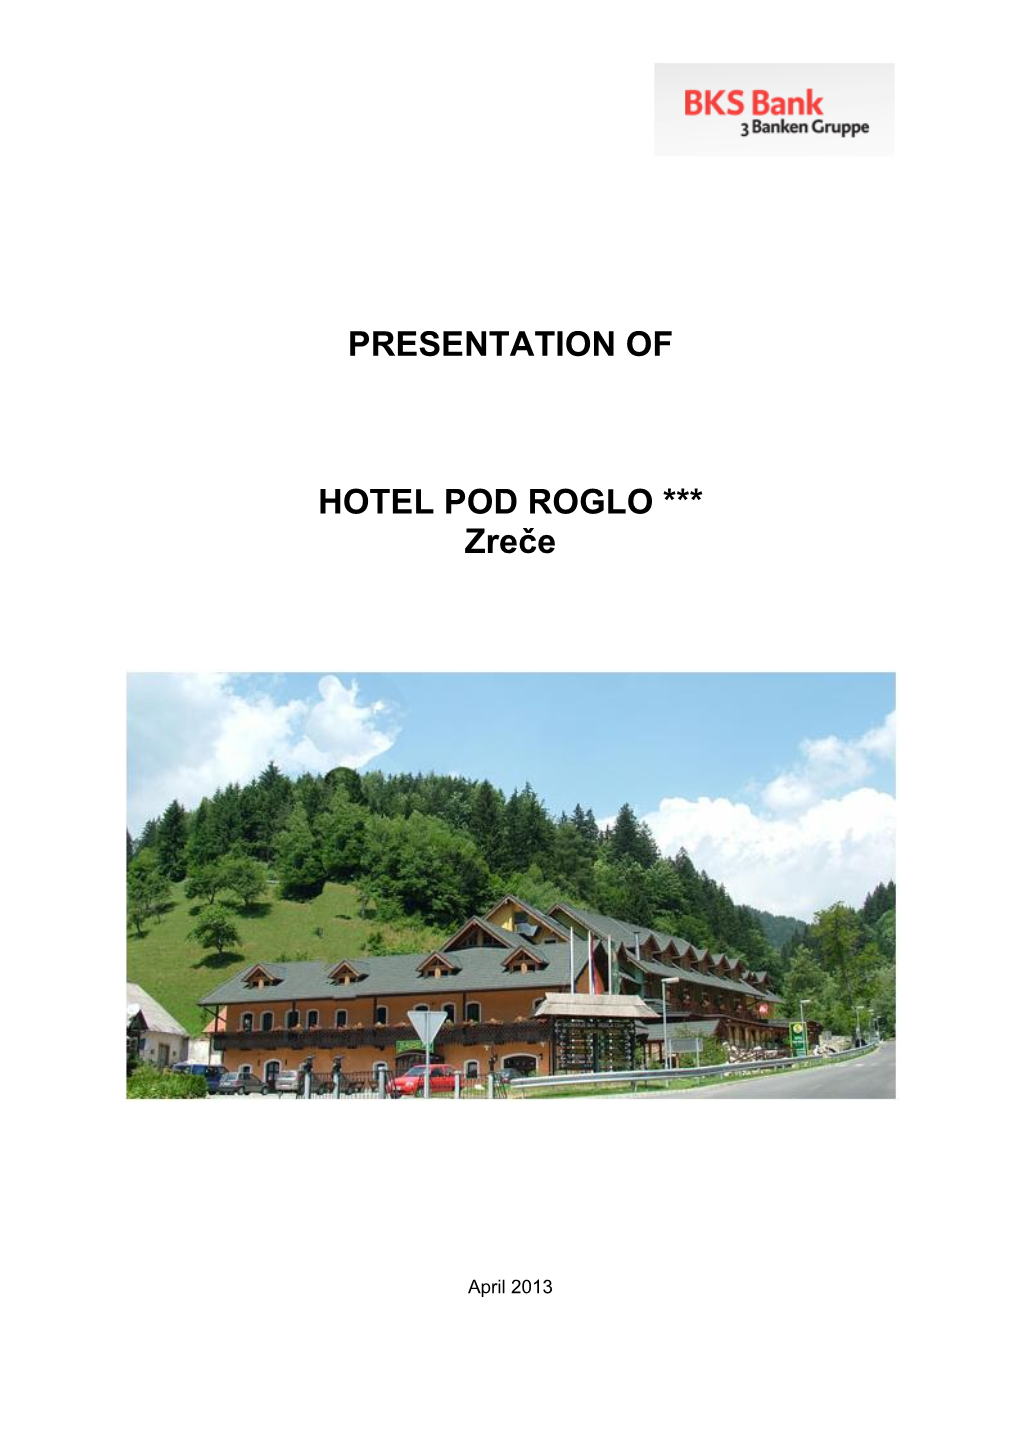 PRESENTATION of HOTEL POD ROGLO *** Zreče